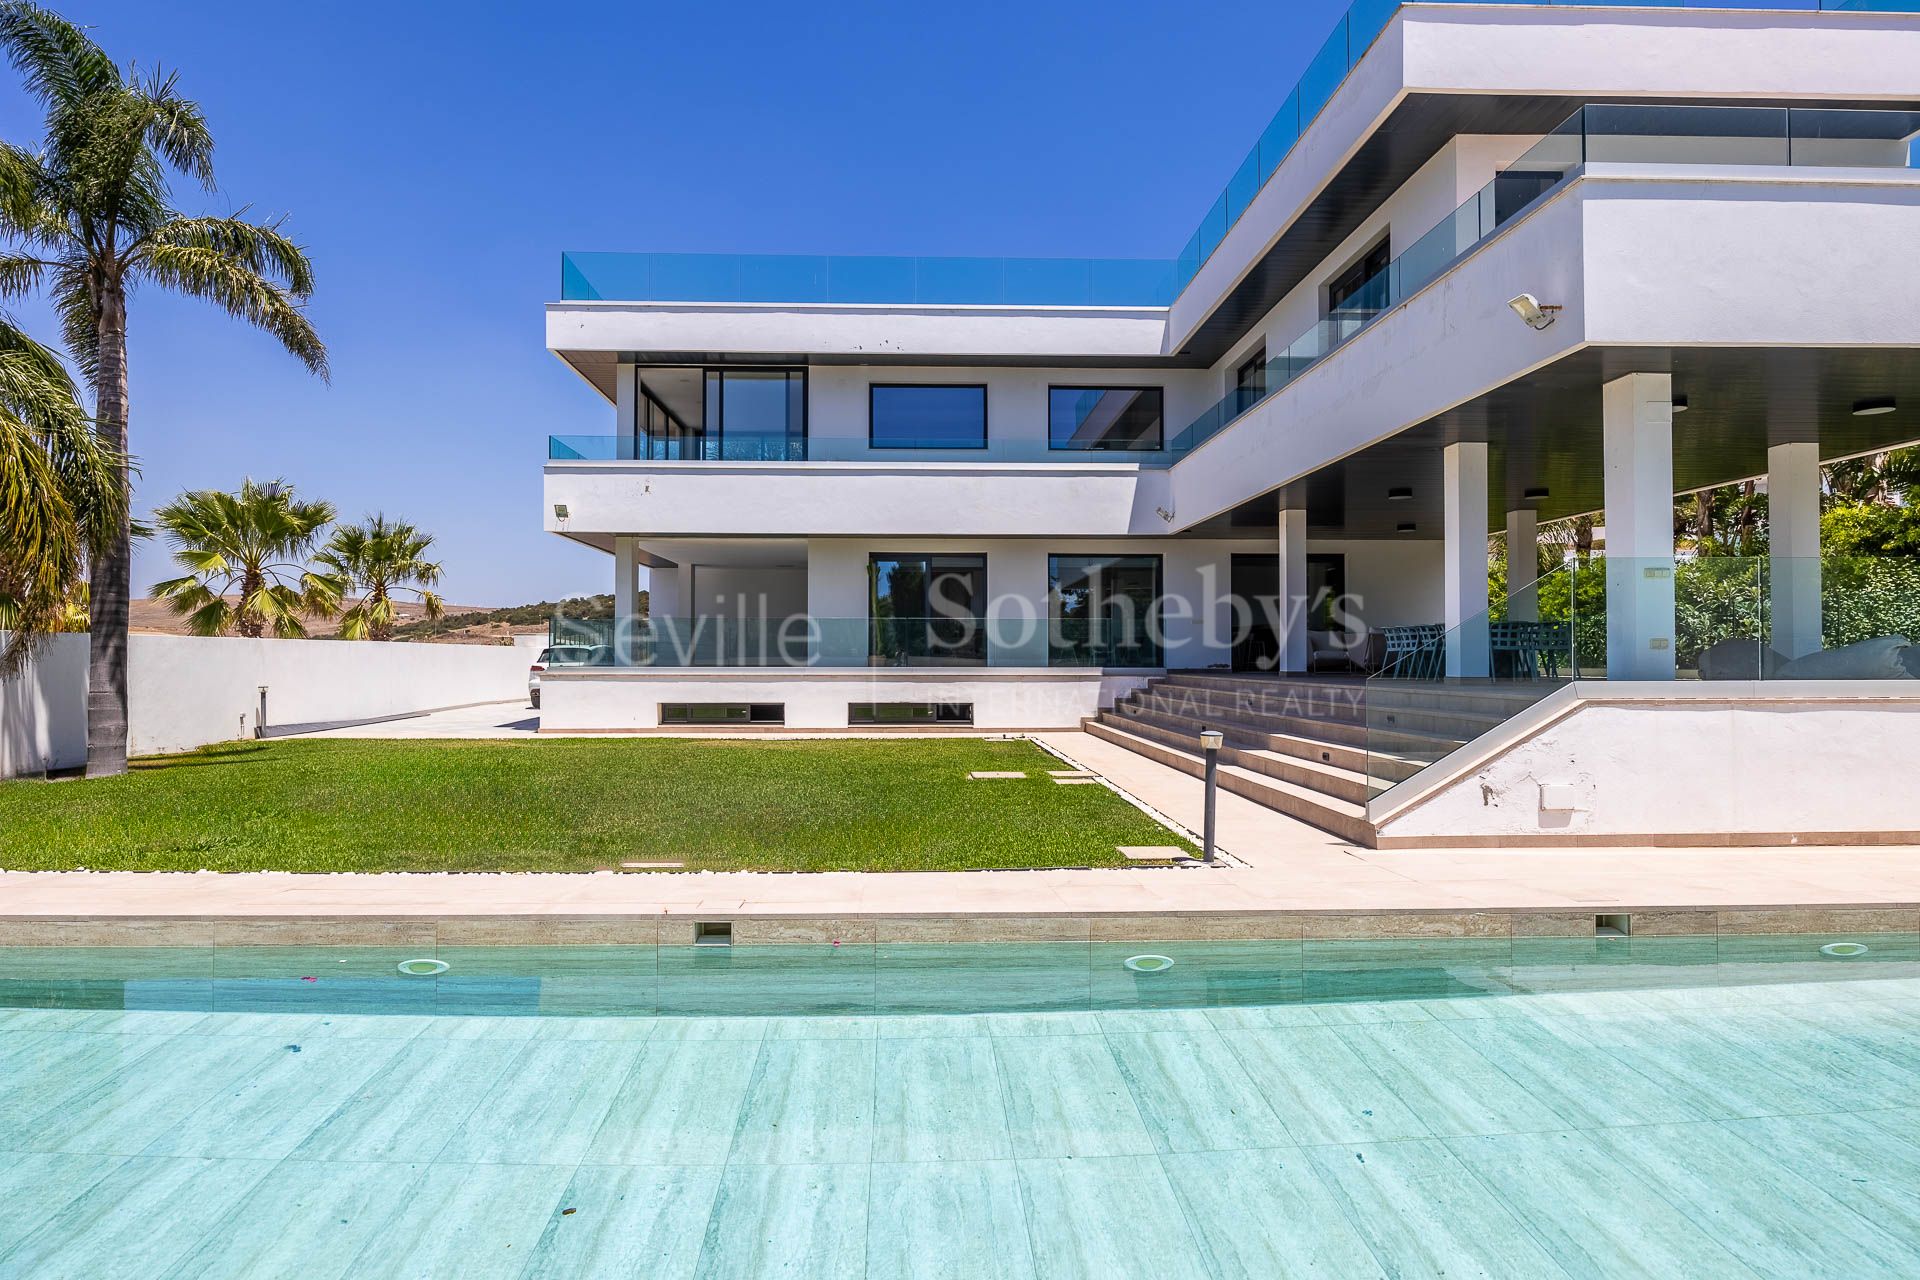 Villa de reciente construcción y moderno diseño en Zahara de los atunes